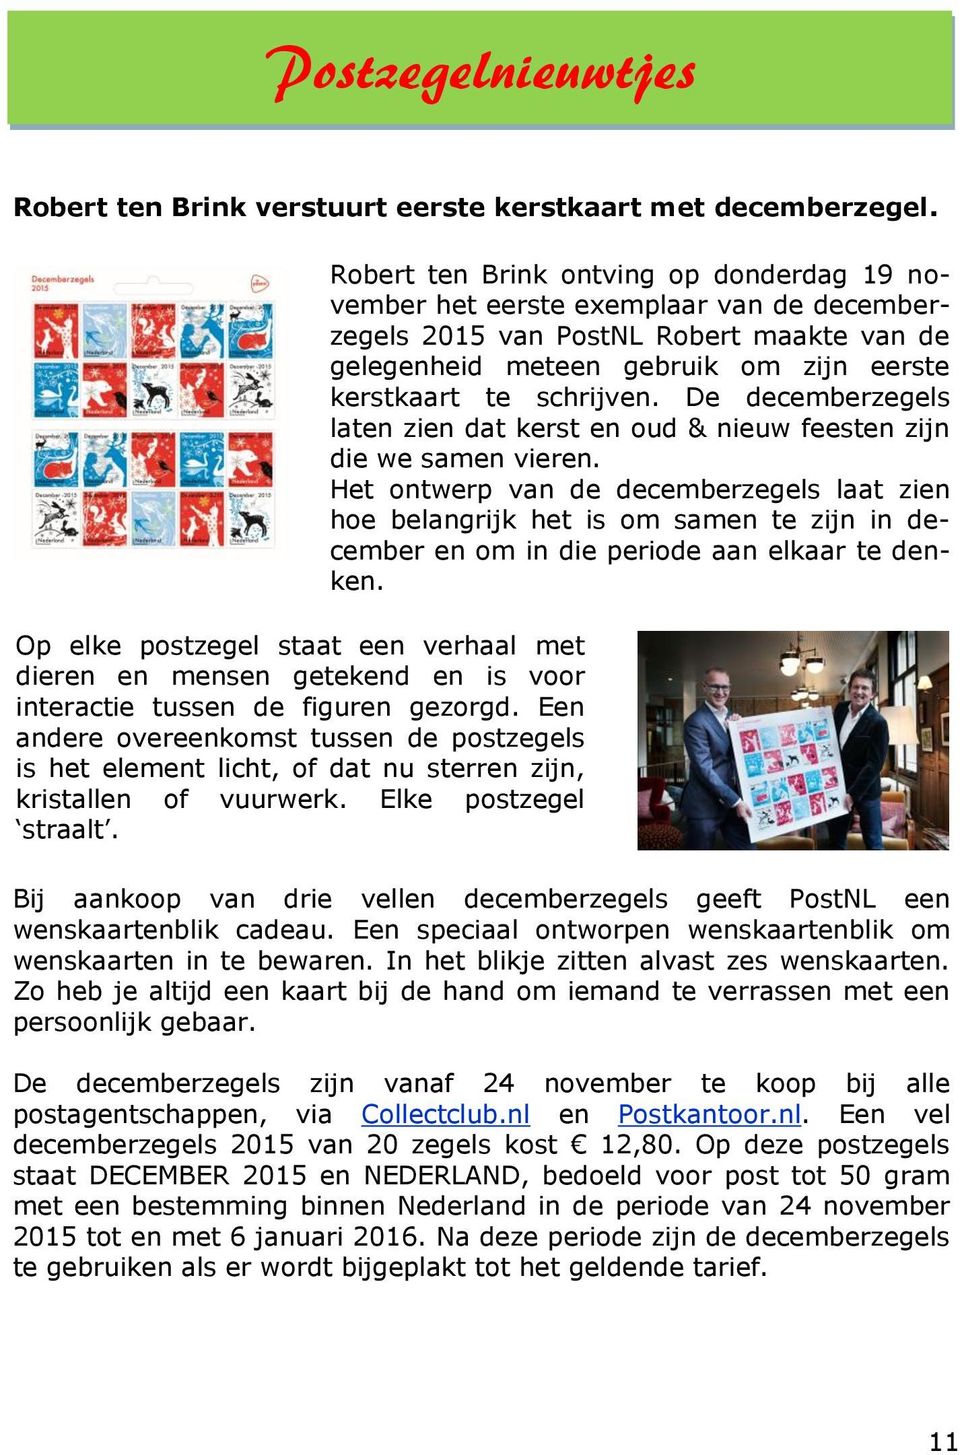 Robert ten Brink ontving op donderdag 19 november het eerste exemplaar van de decemberzegels 2015 van PostNL Robert maakte van de gelegenheid meteen gebruik om zijn eerste kerstkaart te schrijven.